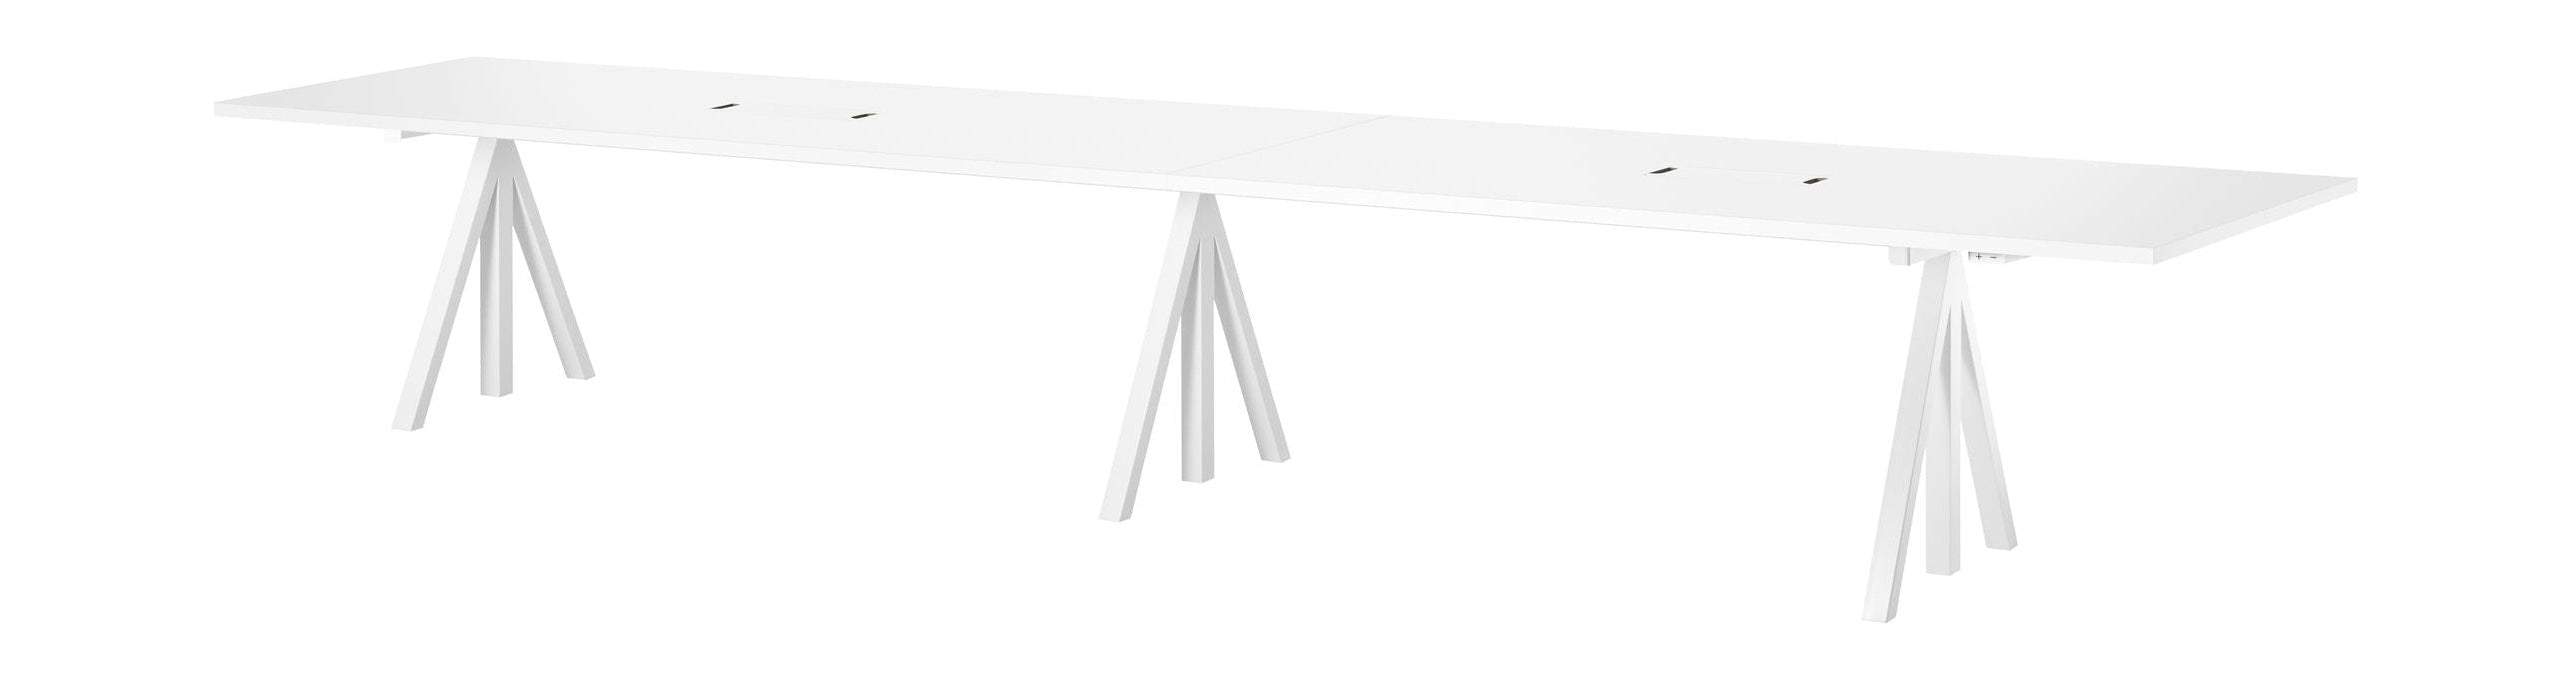 String Furniture Höhenverstellbarer Konferenztisch 90x180 Cm, Laminat weiß